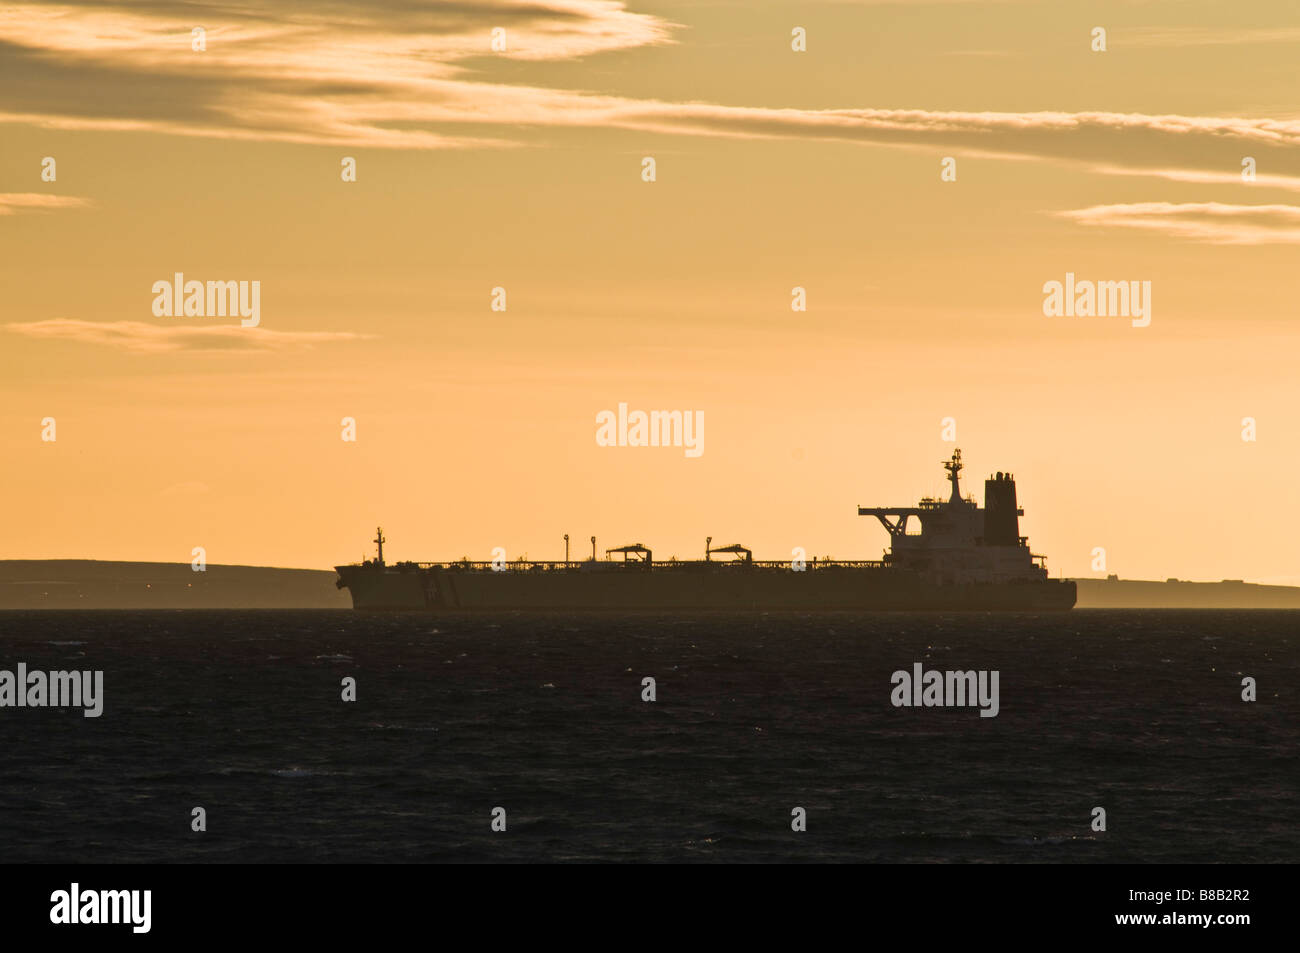 Dh petroliera superpetroliera flusso SCAPA ORKNEY ancorato tramonto scozia cisterna Nave mare silhouette Foto Stock